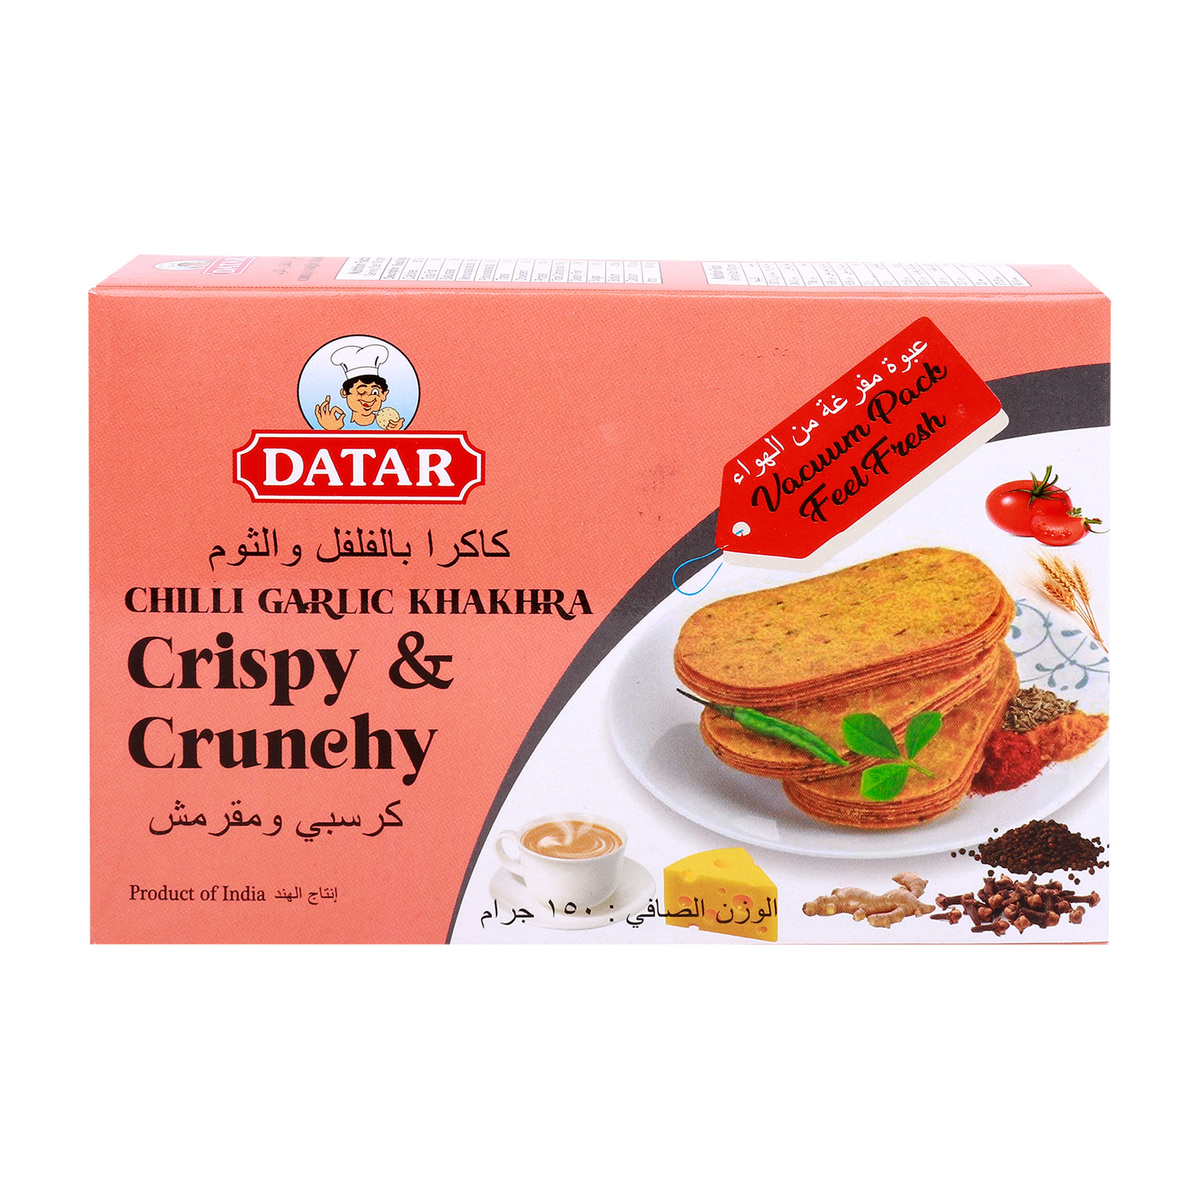 Datar Crispy & Crunchy Chilli Garlic Khakhra 150g